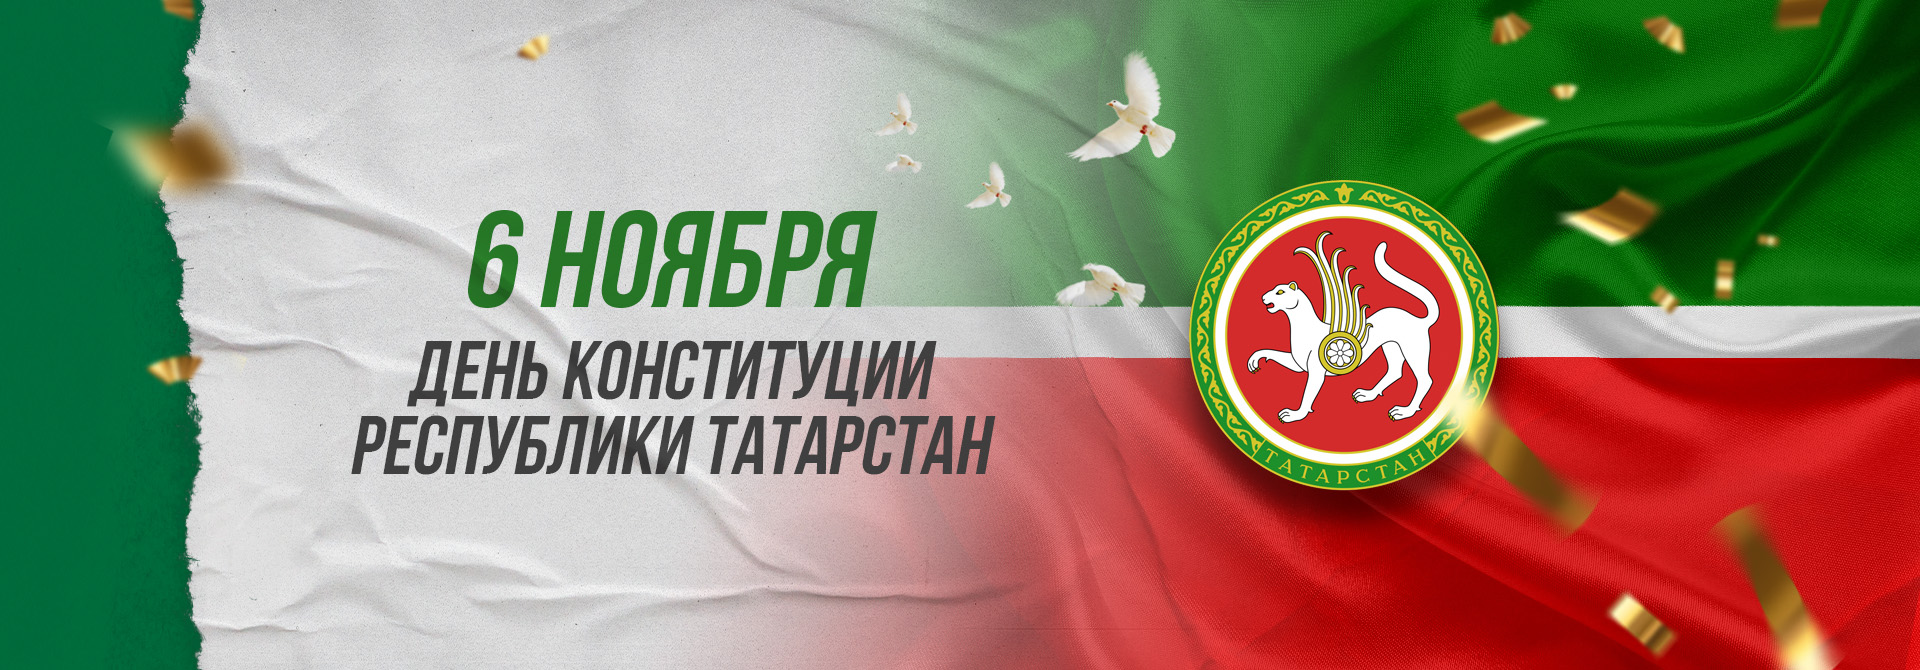 День Конституции Татарстана поздравление